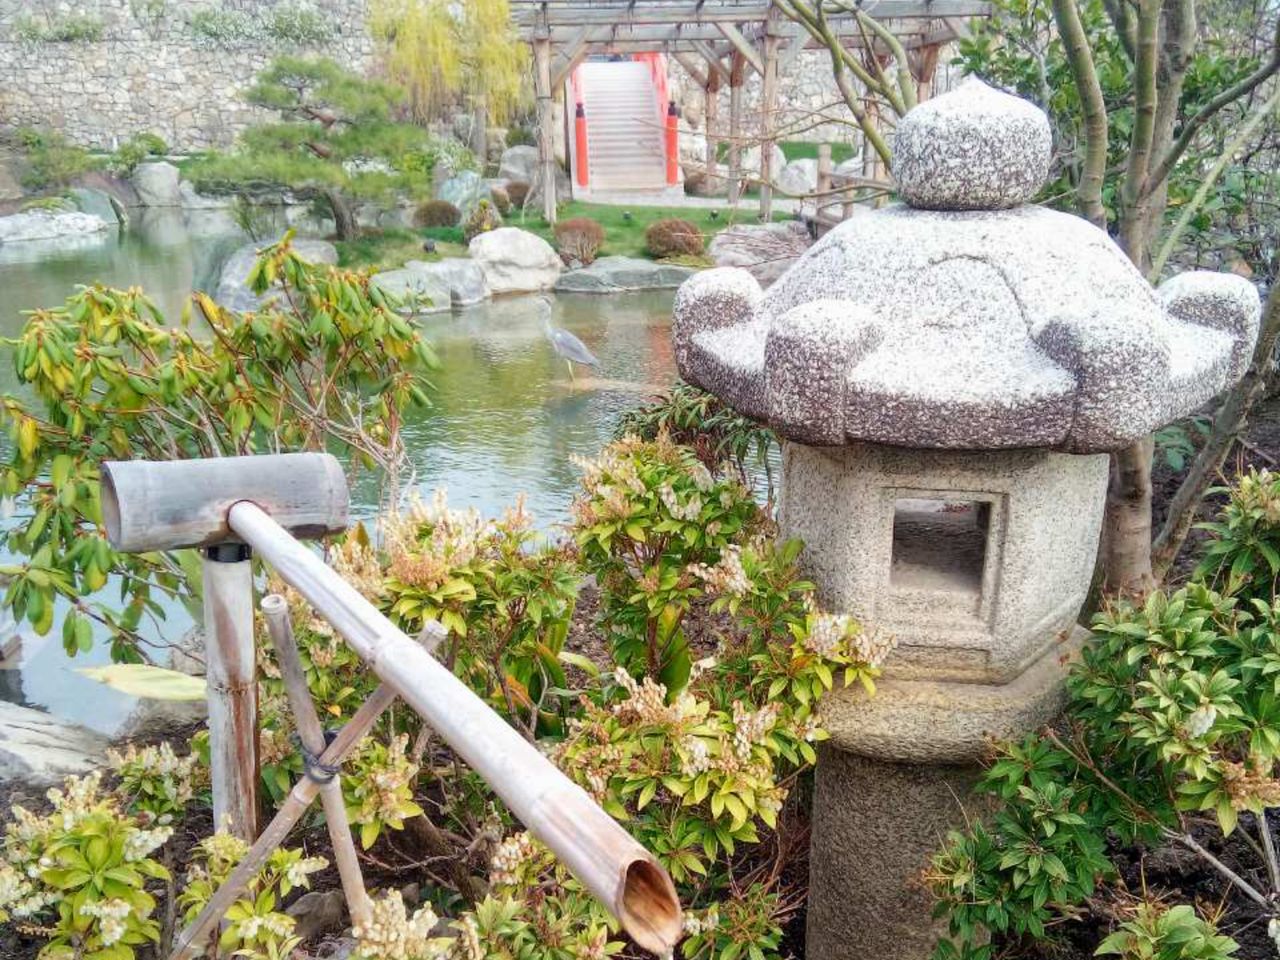 Японский сад и купание в термальных источниках  | Цена 1500₽, отзывы, описание экскурсии